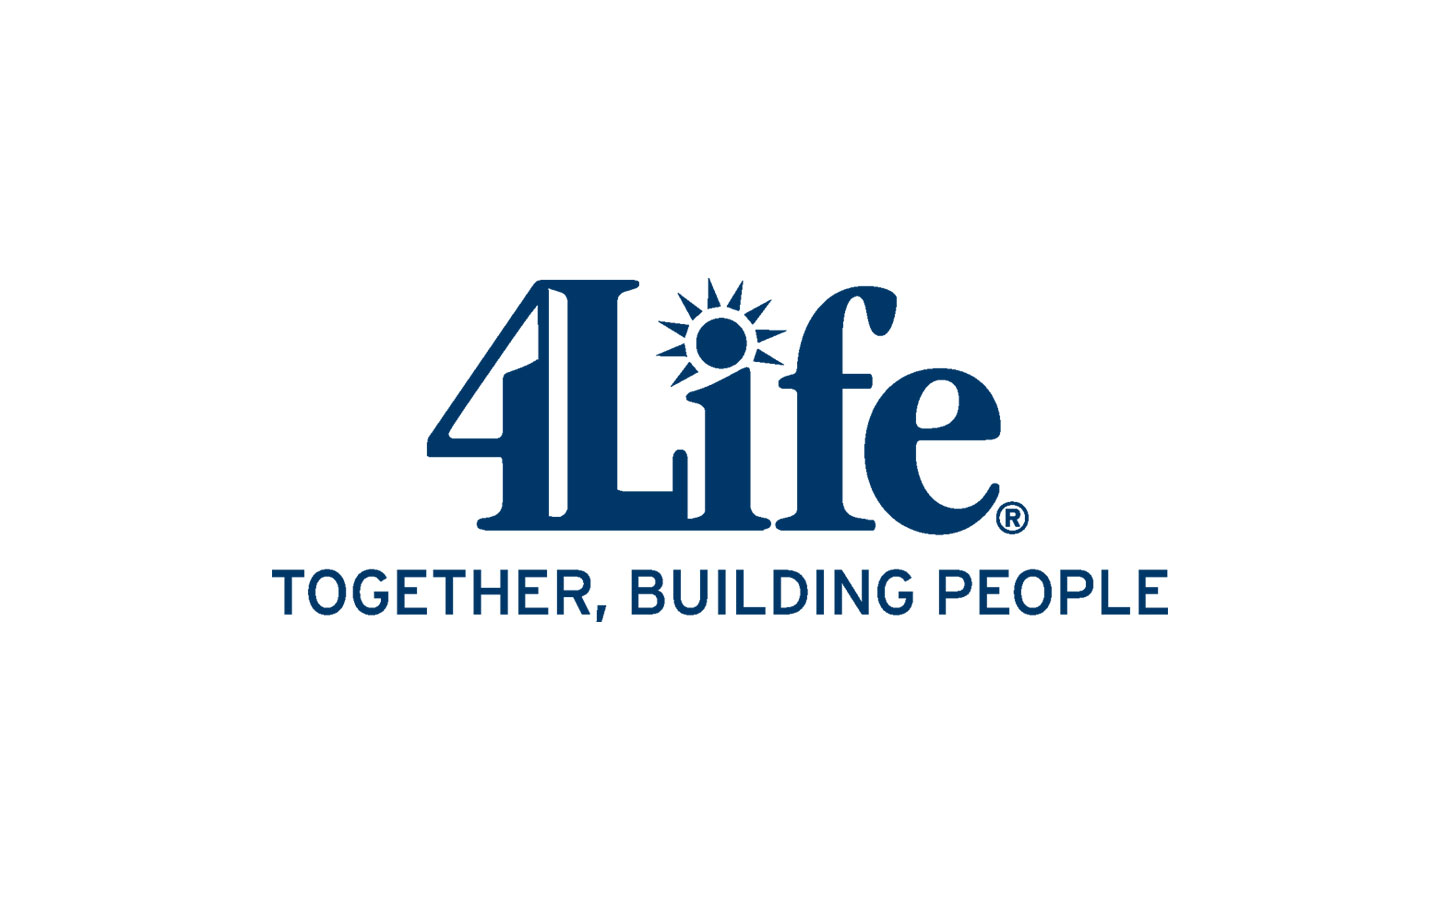 Build 4 life. 4life. 4life research. 4life research логотип. Бизнес 4life сетевой.